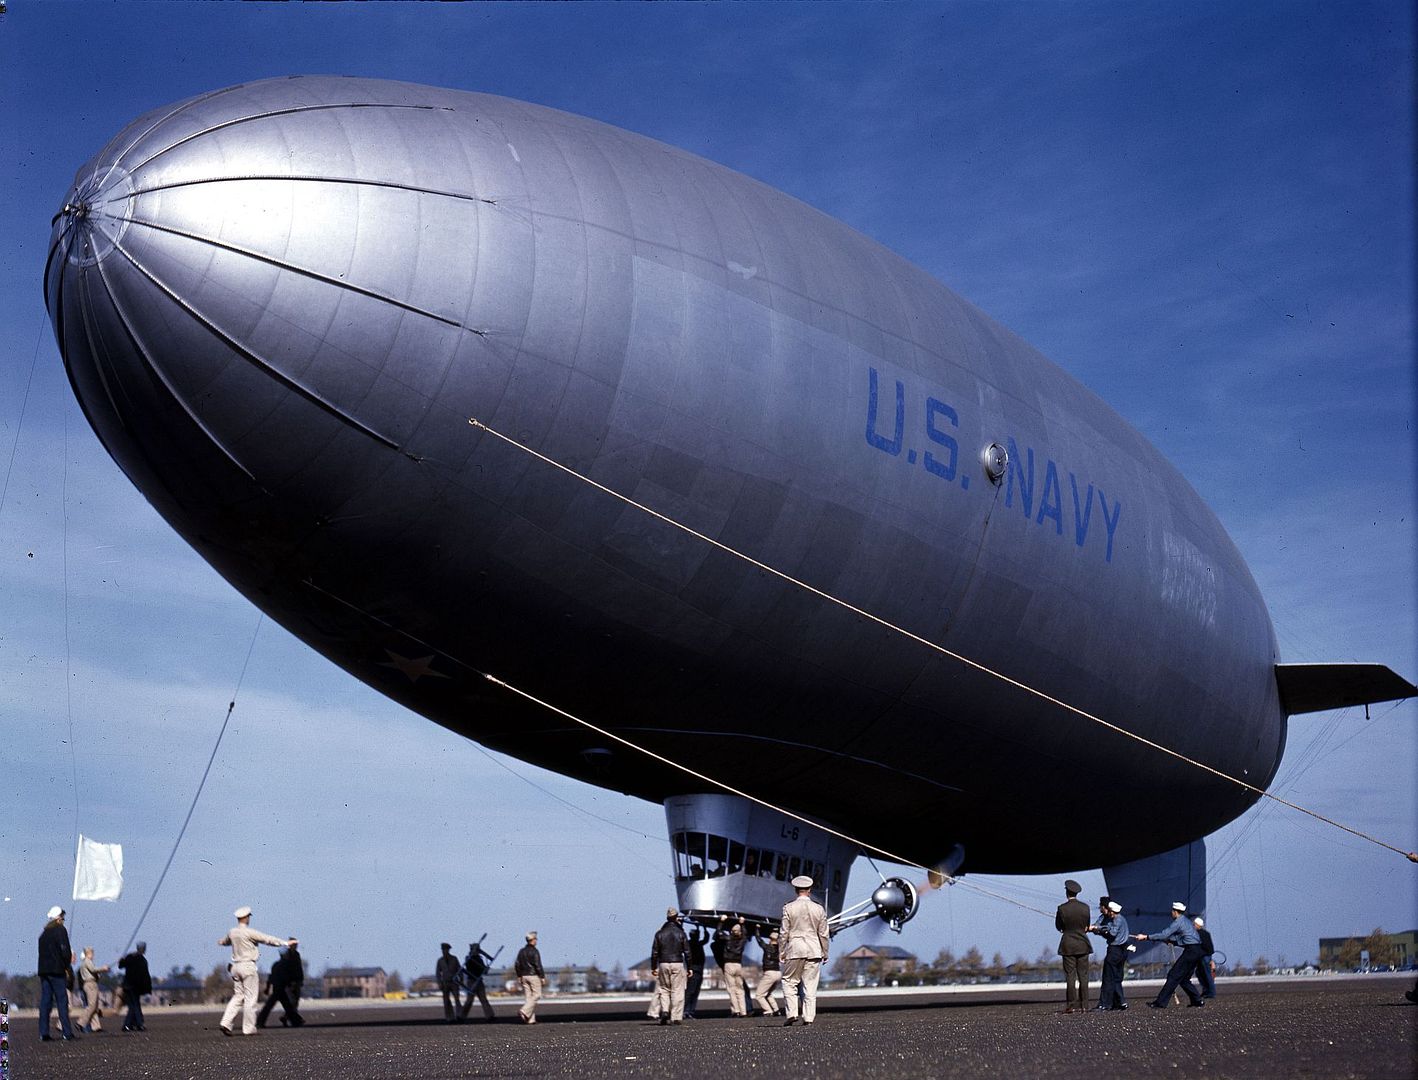 Line Handling Crew Lands Navy Blimp At Naval Air Station